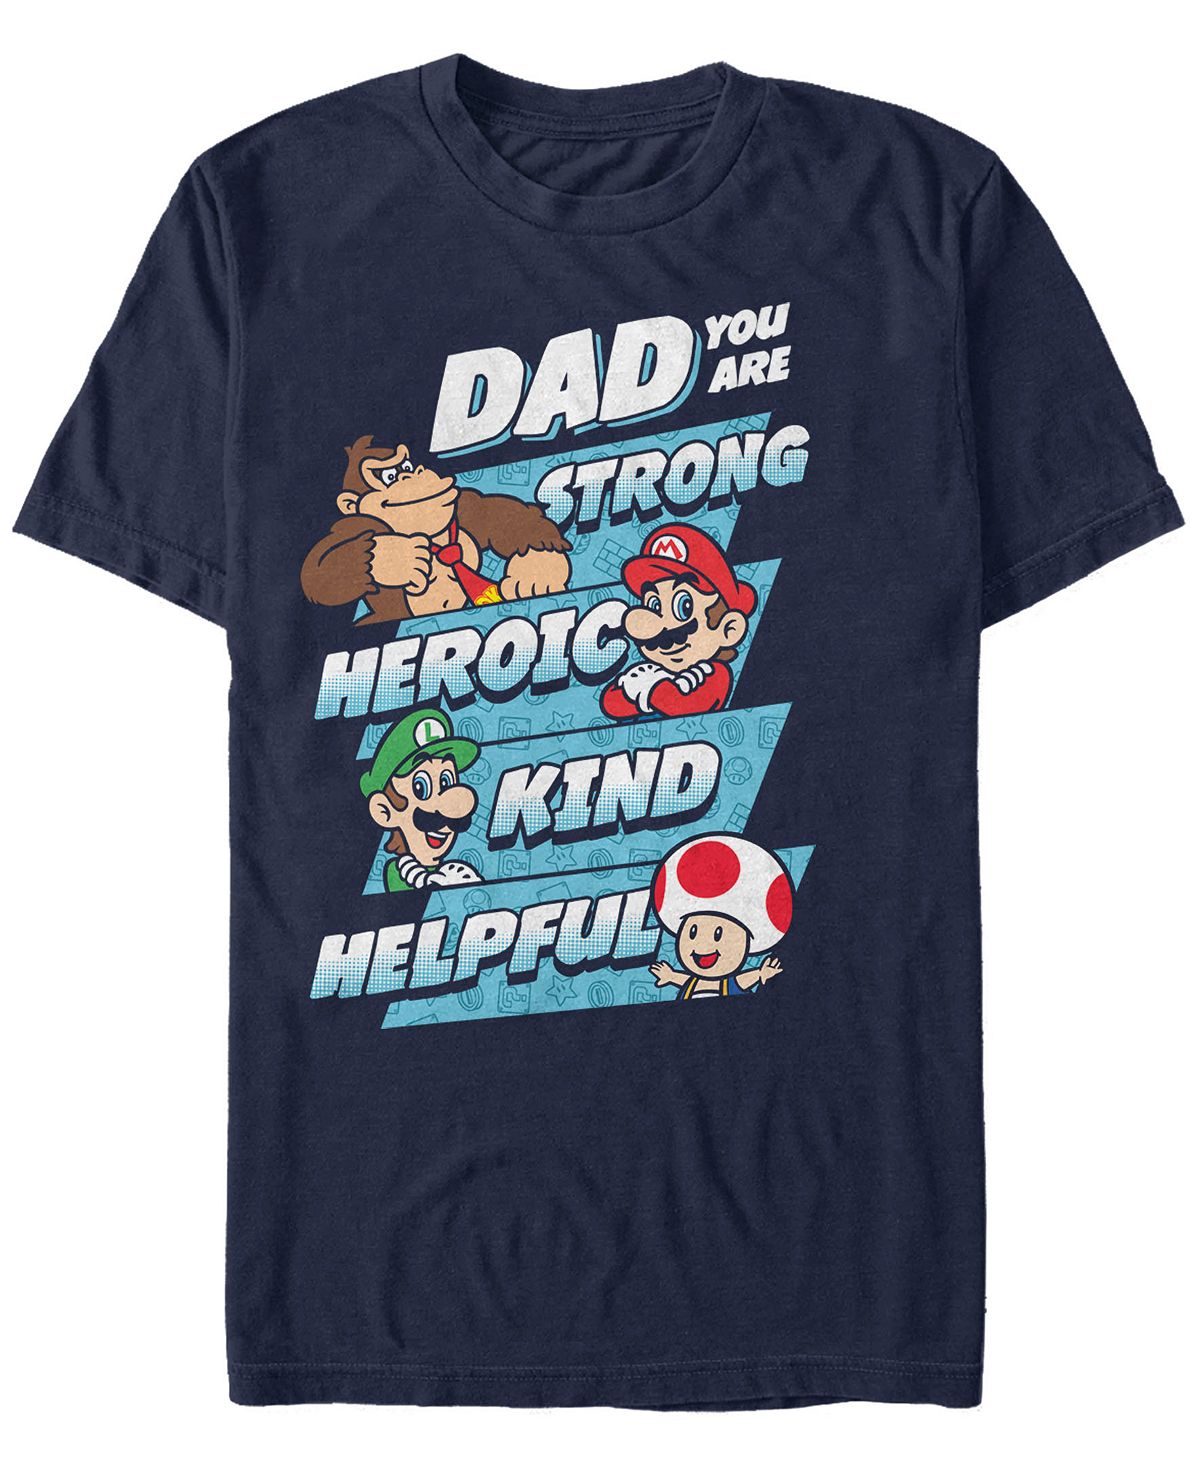 Мужская футболка с коротким рукавом nintendo super mario dad strengths Fifth Sun, синий